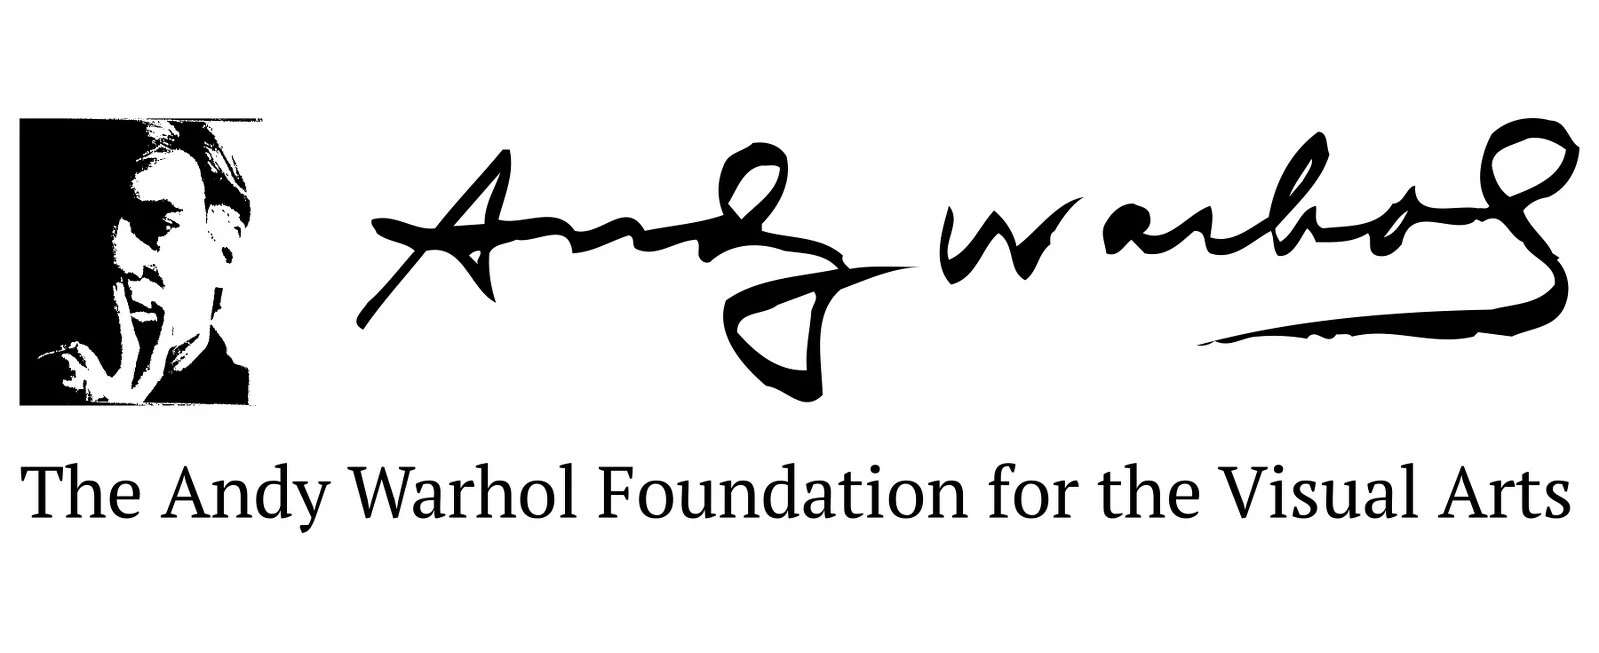 Andy Warhol Foundation logo.